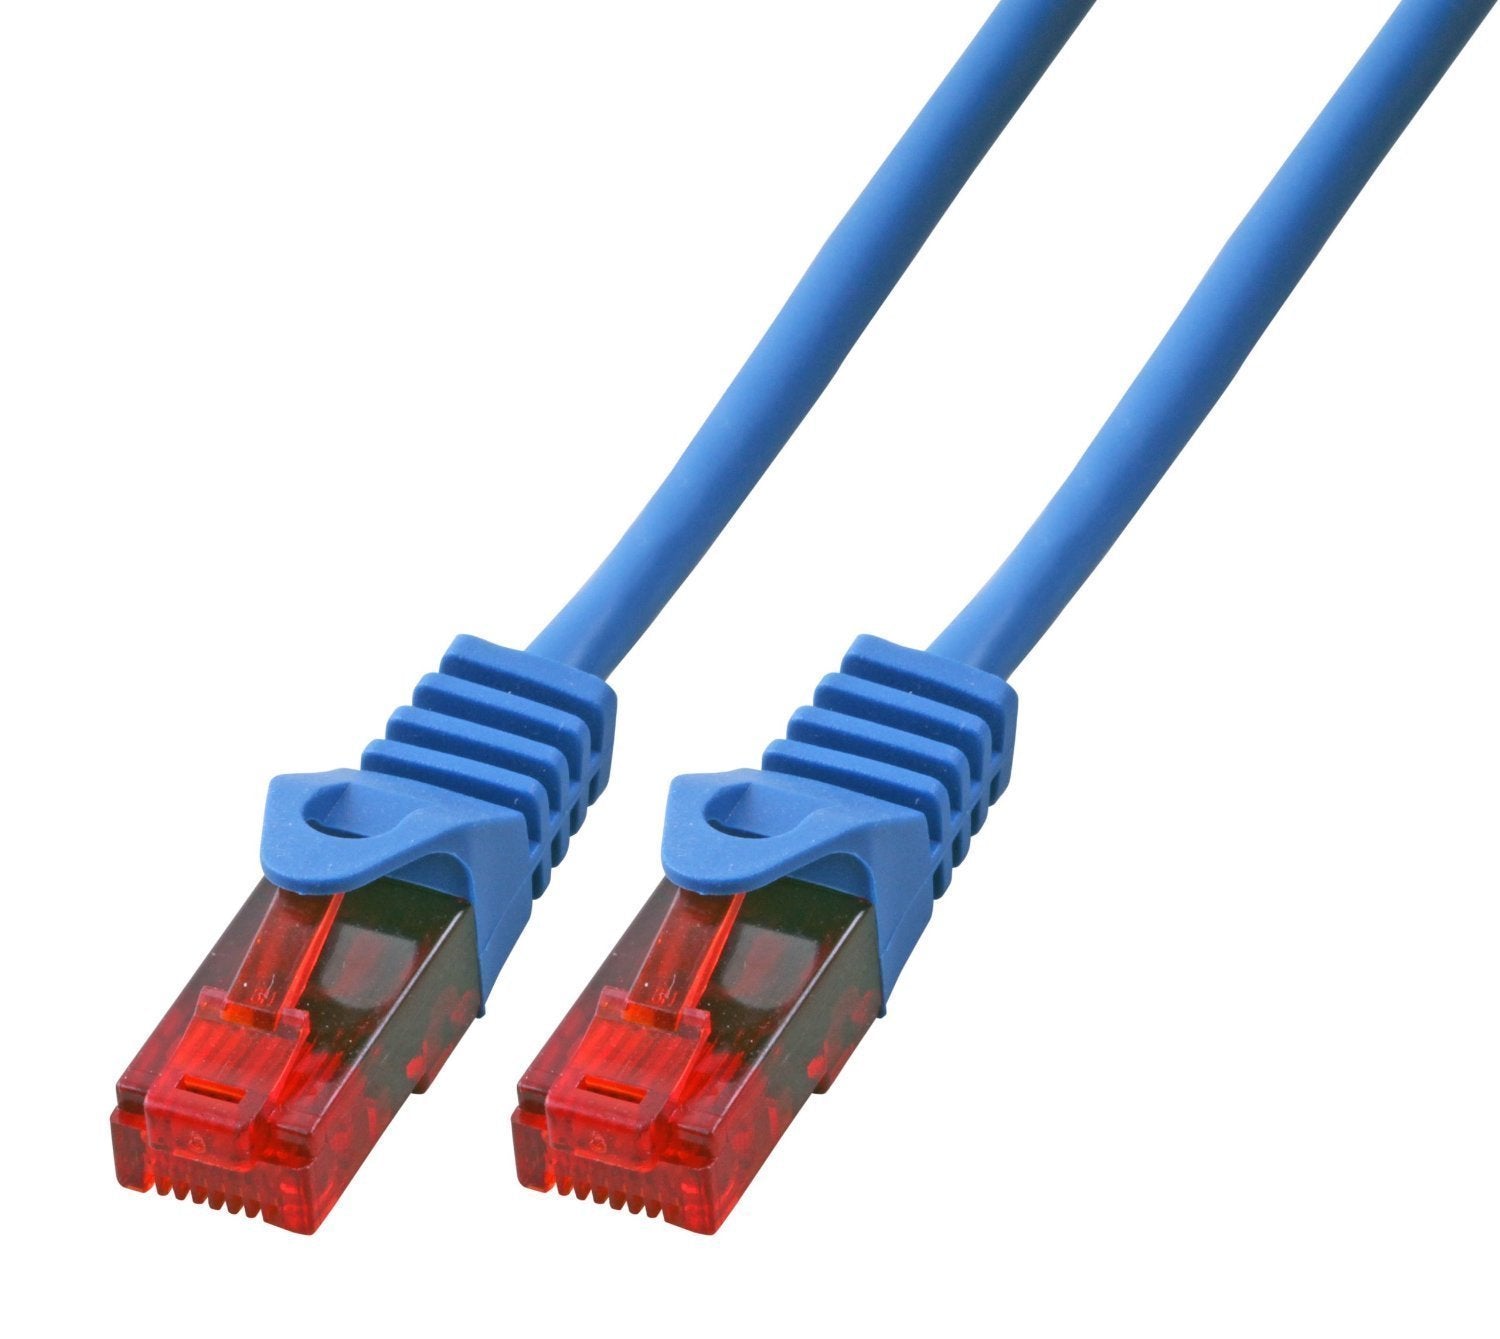 30m Gigabit Ethernet LAN Kabel Netzwerkkabel blau | #Elektroniktrade.ch#